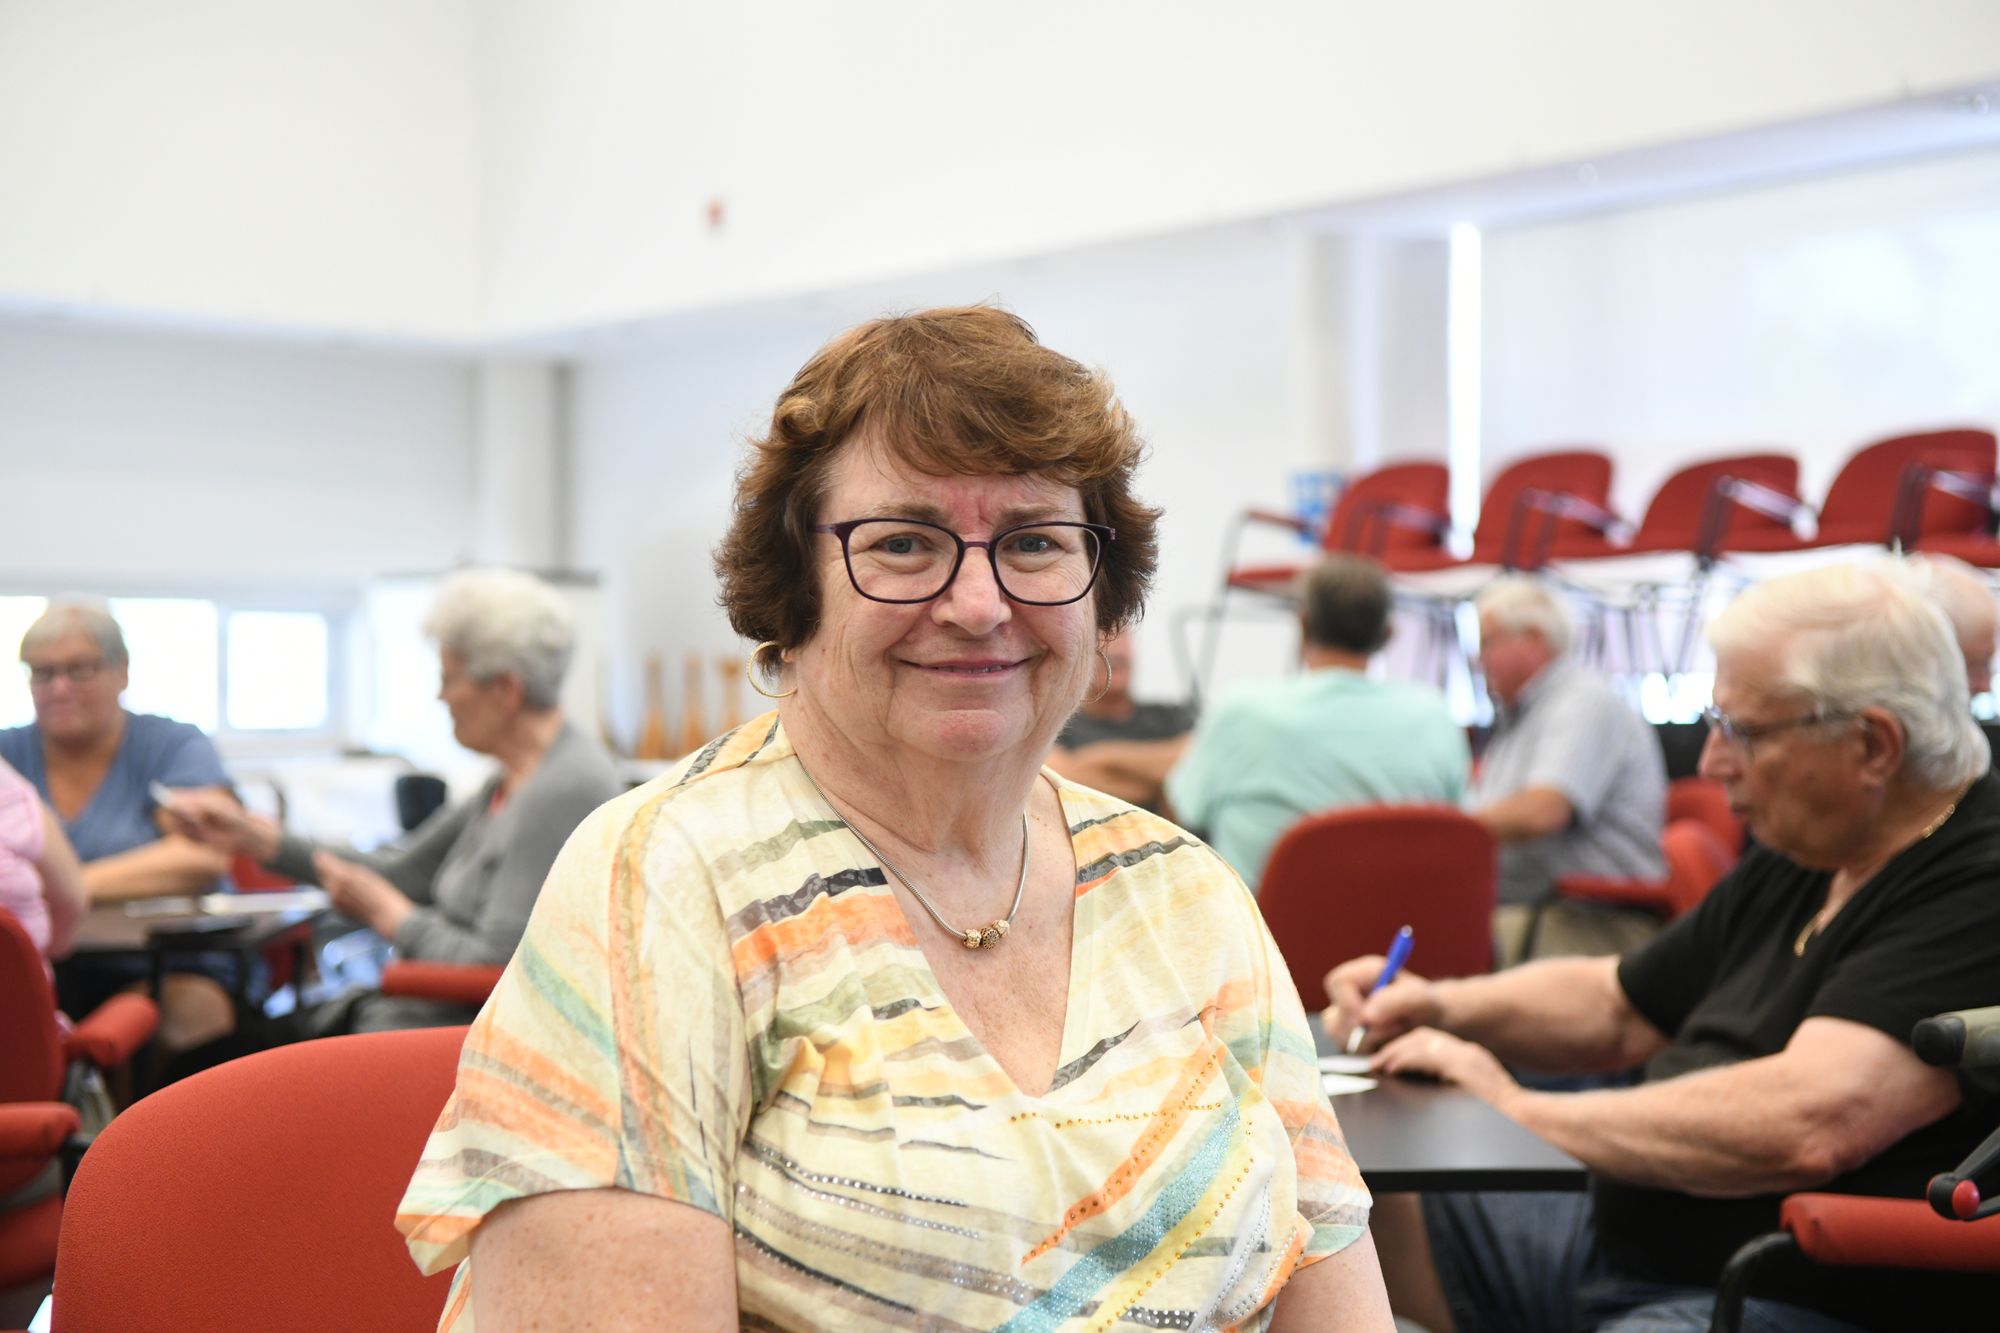                      Elmira woman earns Ontario Senior Citizen of the Year                             
                     